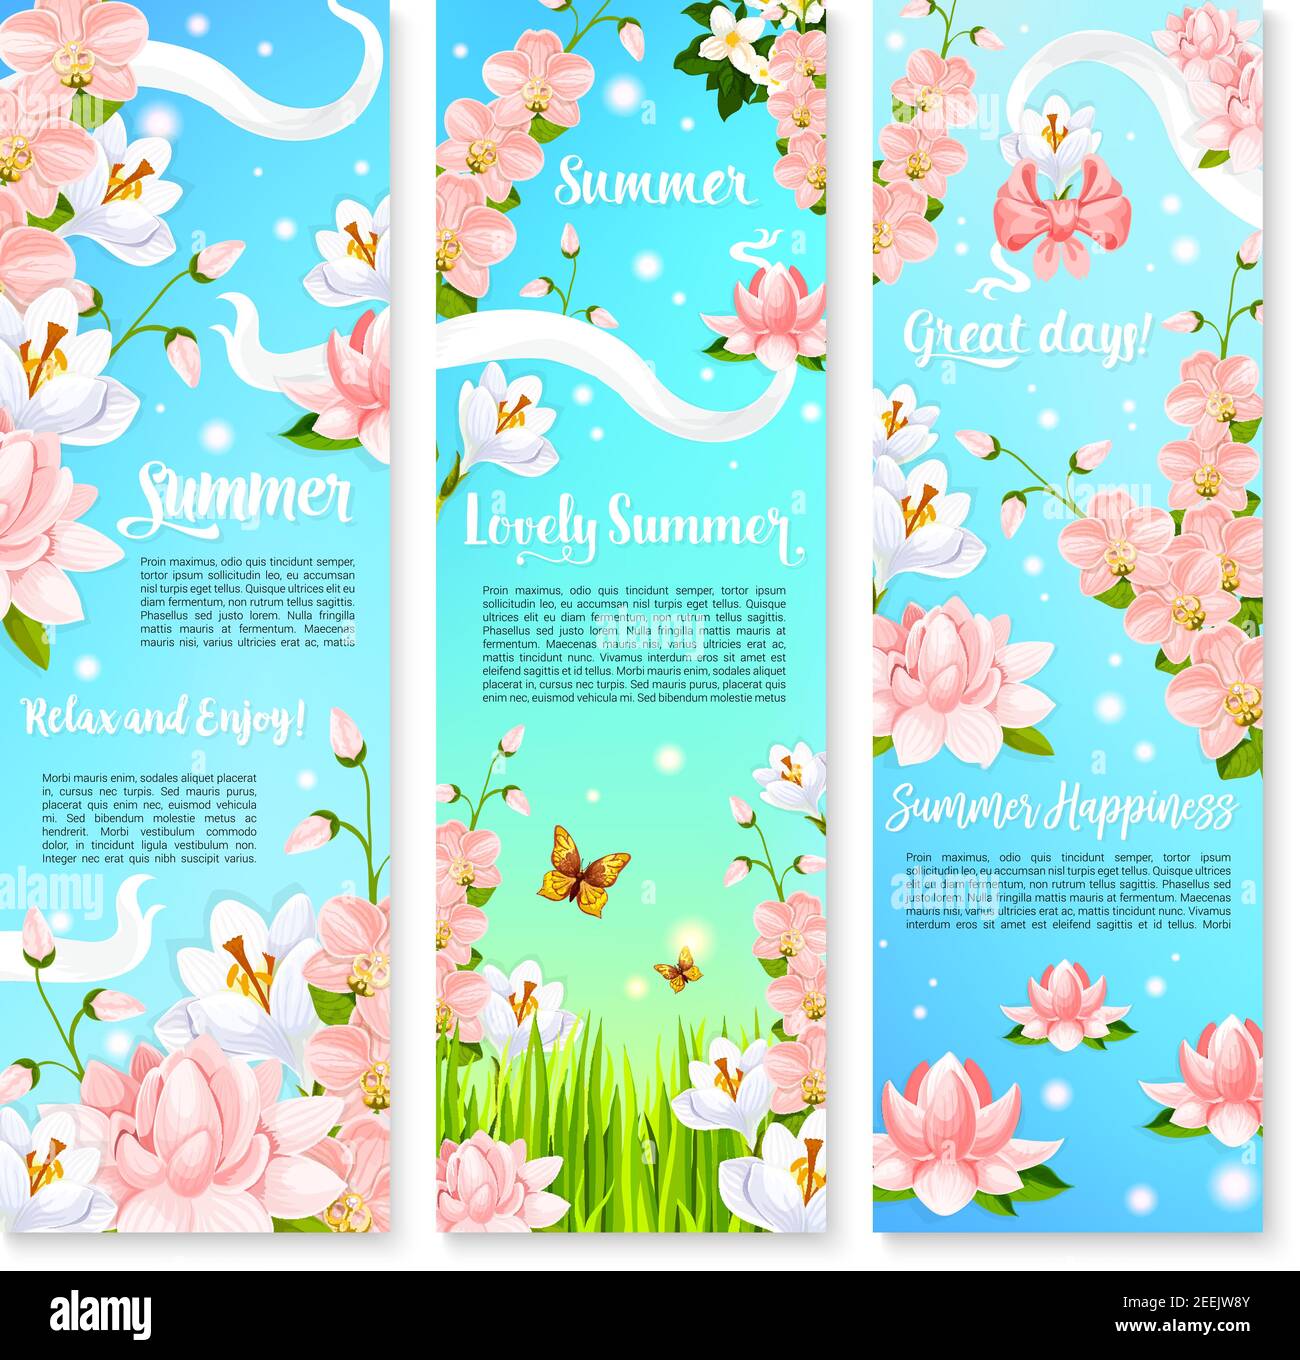 Banner per il giorno estivo per il saluto delle vacanze estive. Disegno vettoriale di croci in fiore, fiori di ciliegio e fiori di orchidee, o fiori di loto su gr Illustrazione Vettoriale